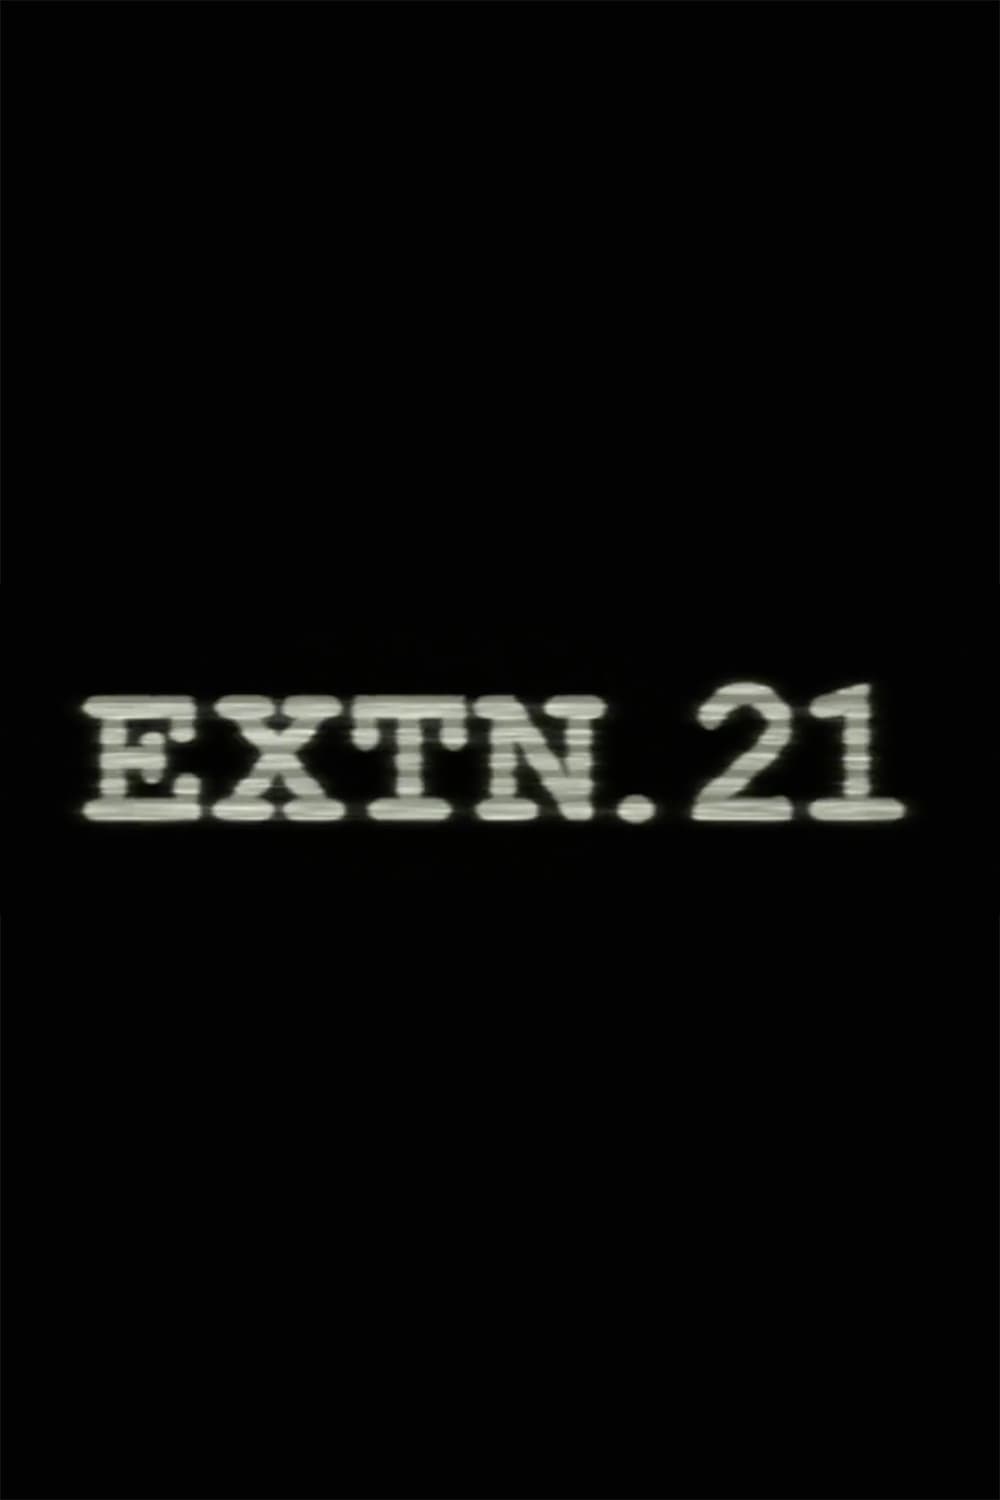 Extn. 21